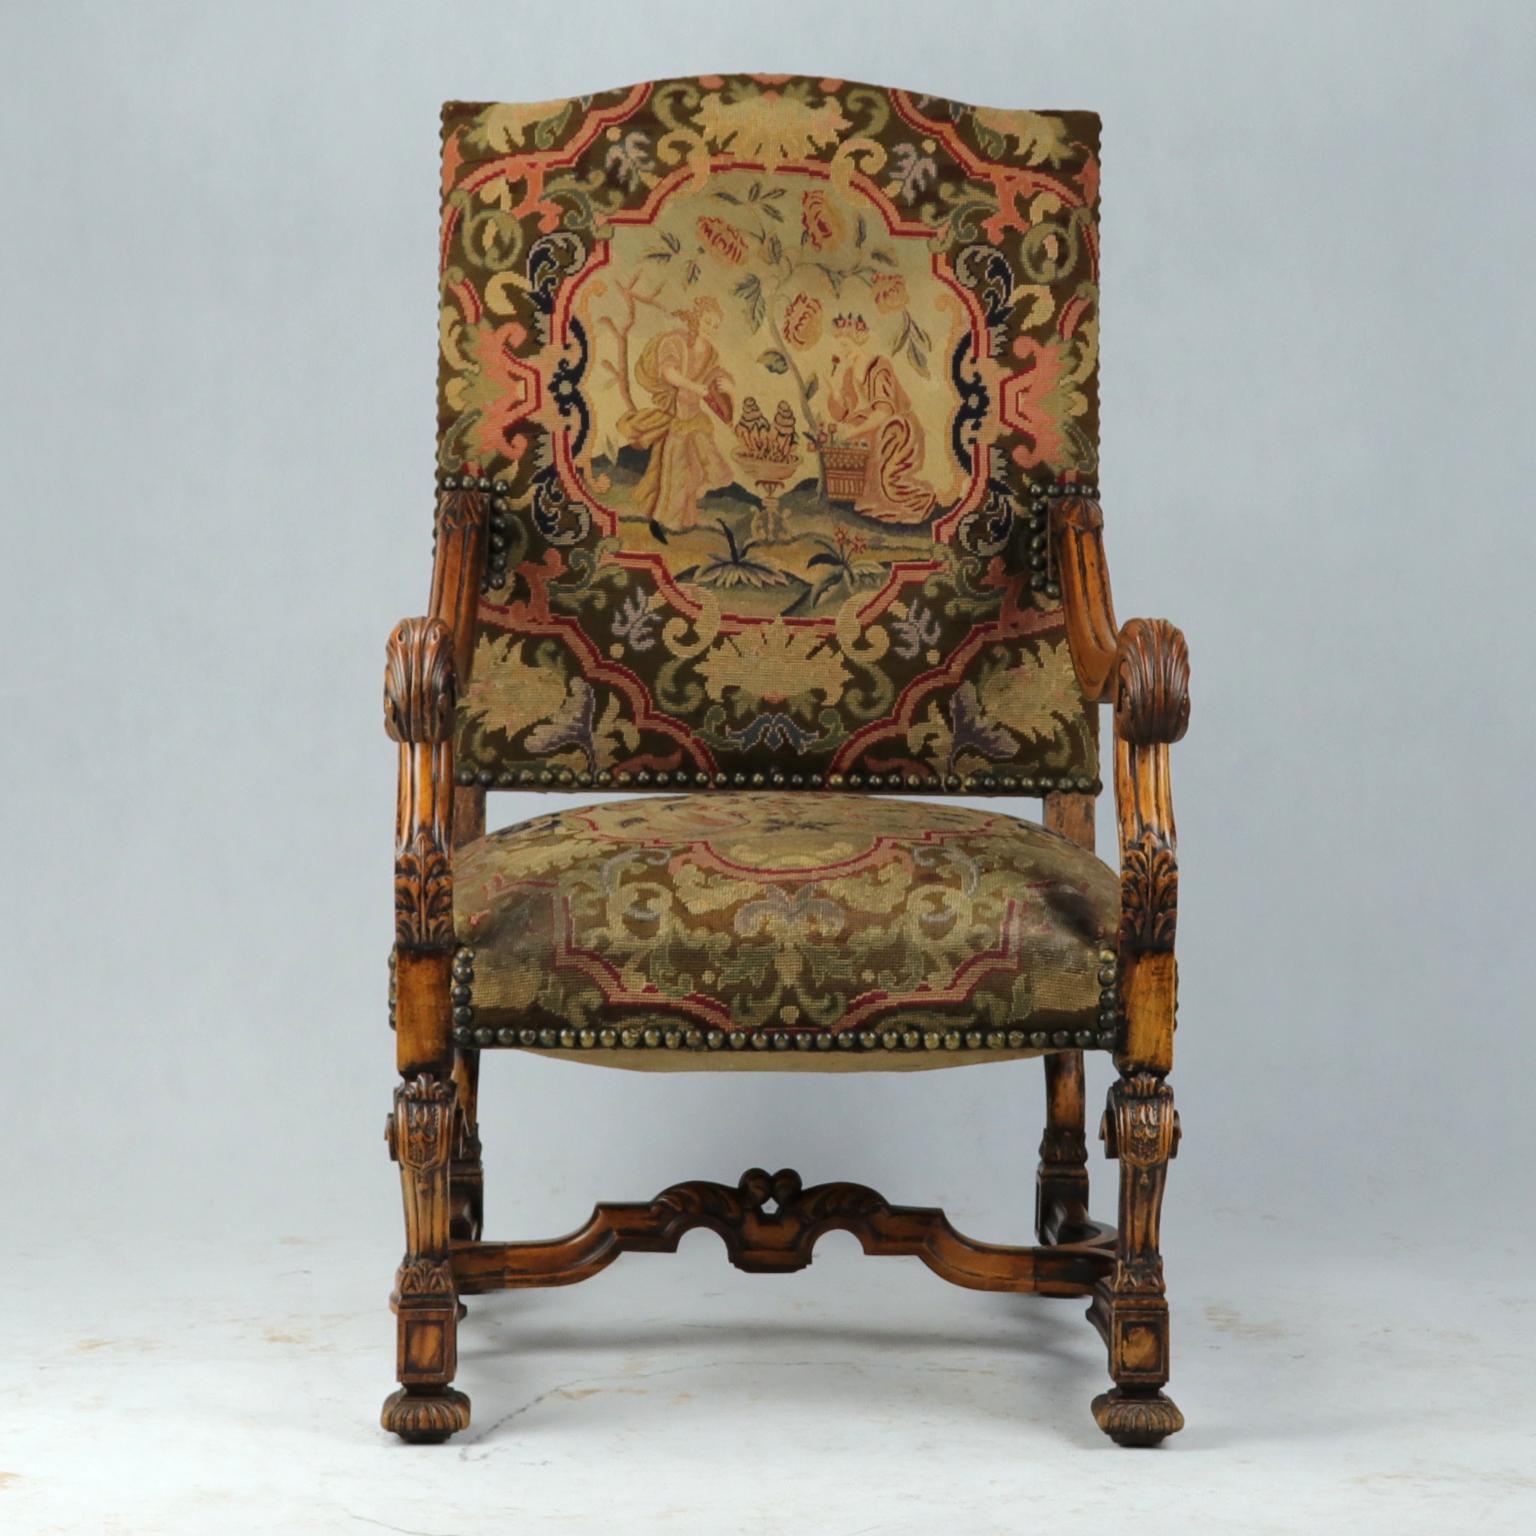 Ein sehr guter großer Louis XIV-Sessel aus Obstholz mit leicht schräger, rechteckiger, hoher Rückenlehne und gepolstertem Sitz. Mit floral geschnitzten, gerollten Armen. Auf geschnitzten Beinen, die durch eine H-förmige Bahre verbunden sind. Der